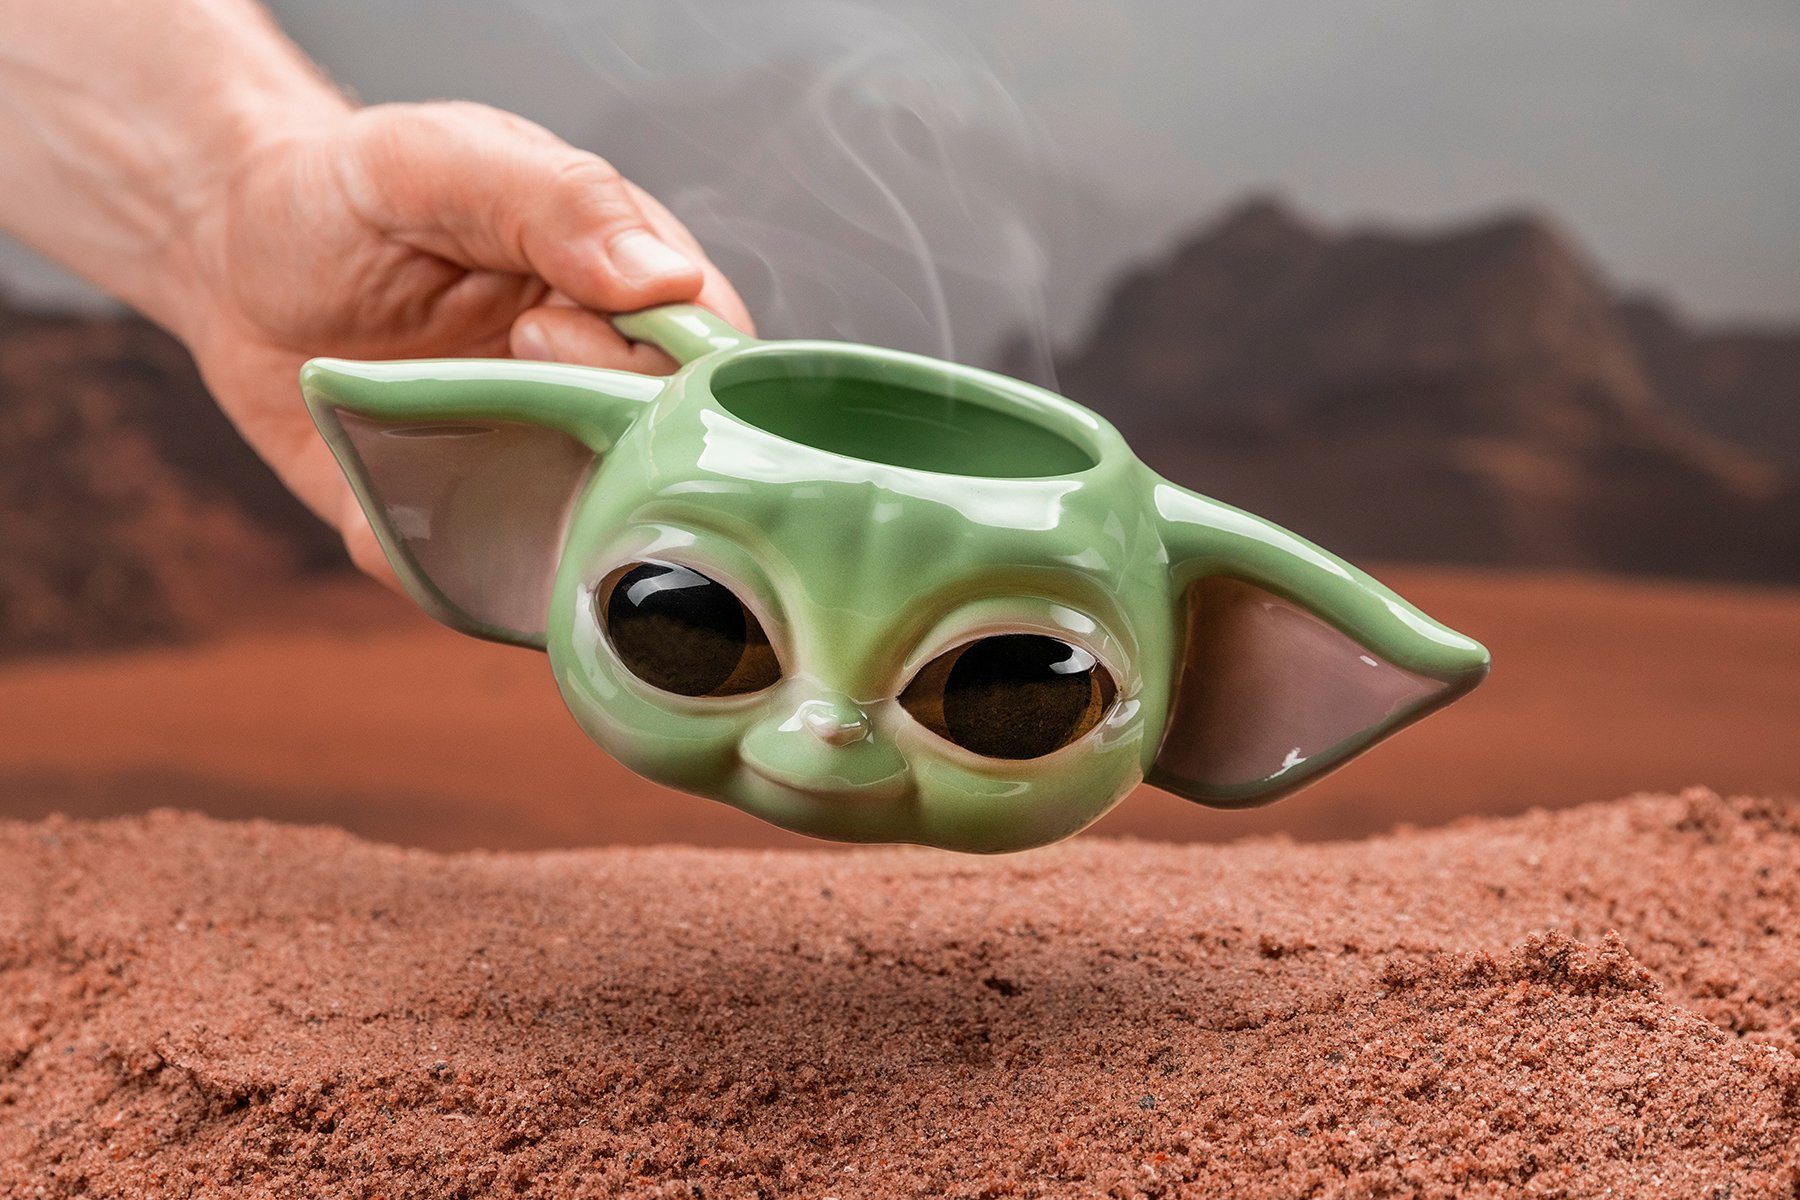 Paladone Tasse Mandalorian Tasse 3D Yoda Baby The